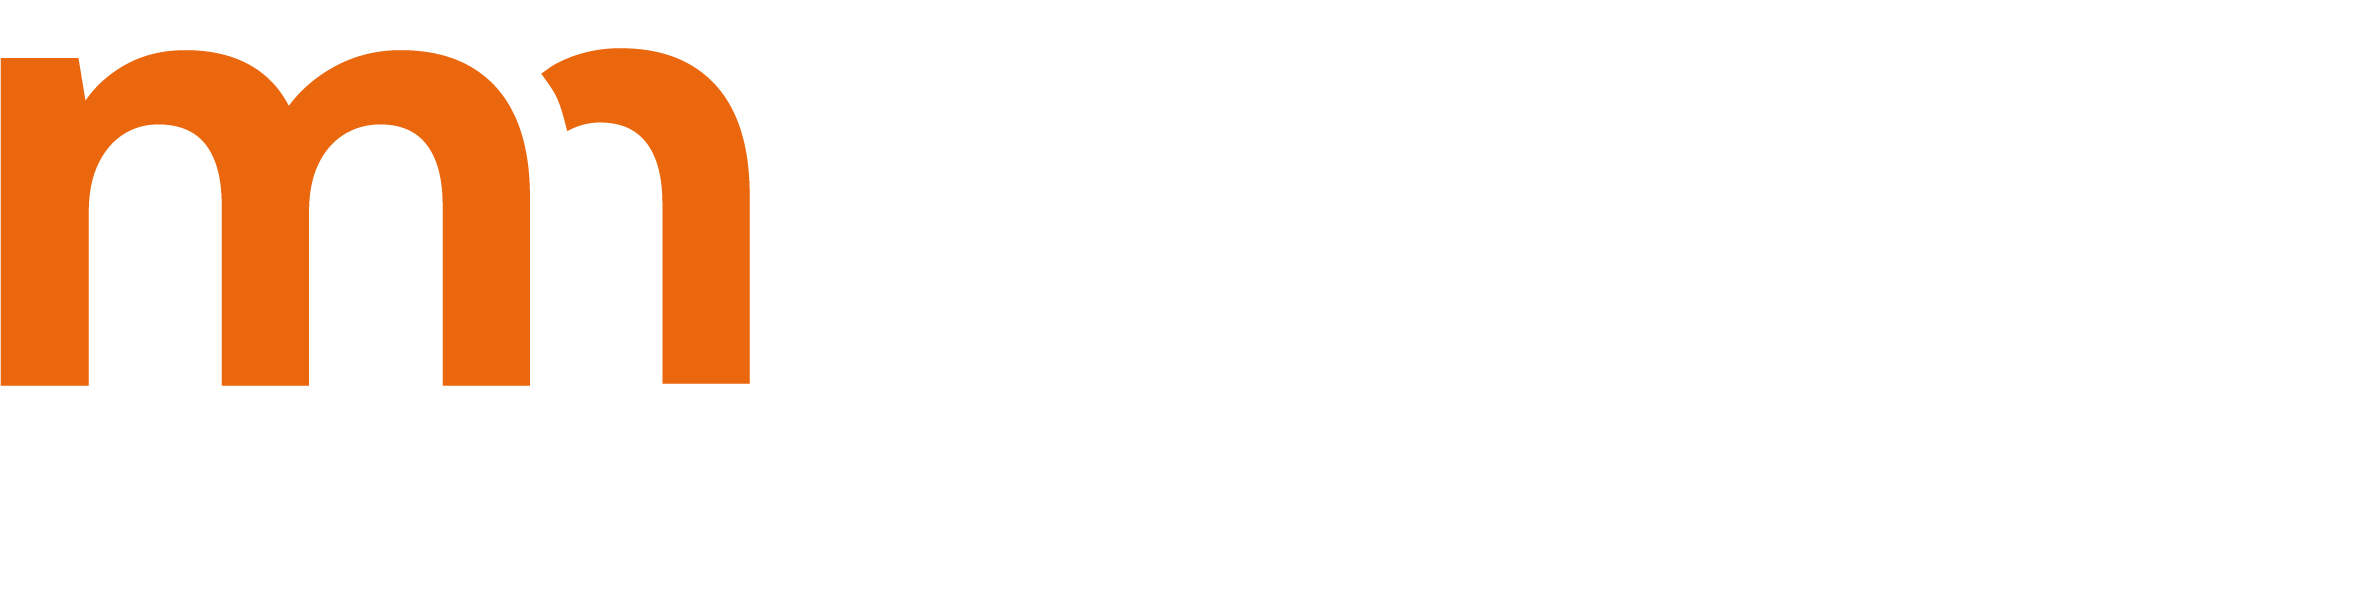 Medienmanagement Studium Würzburg